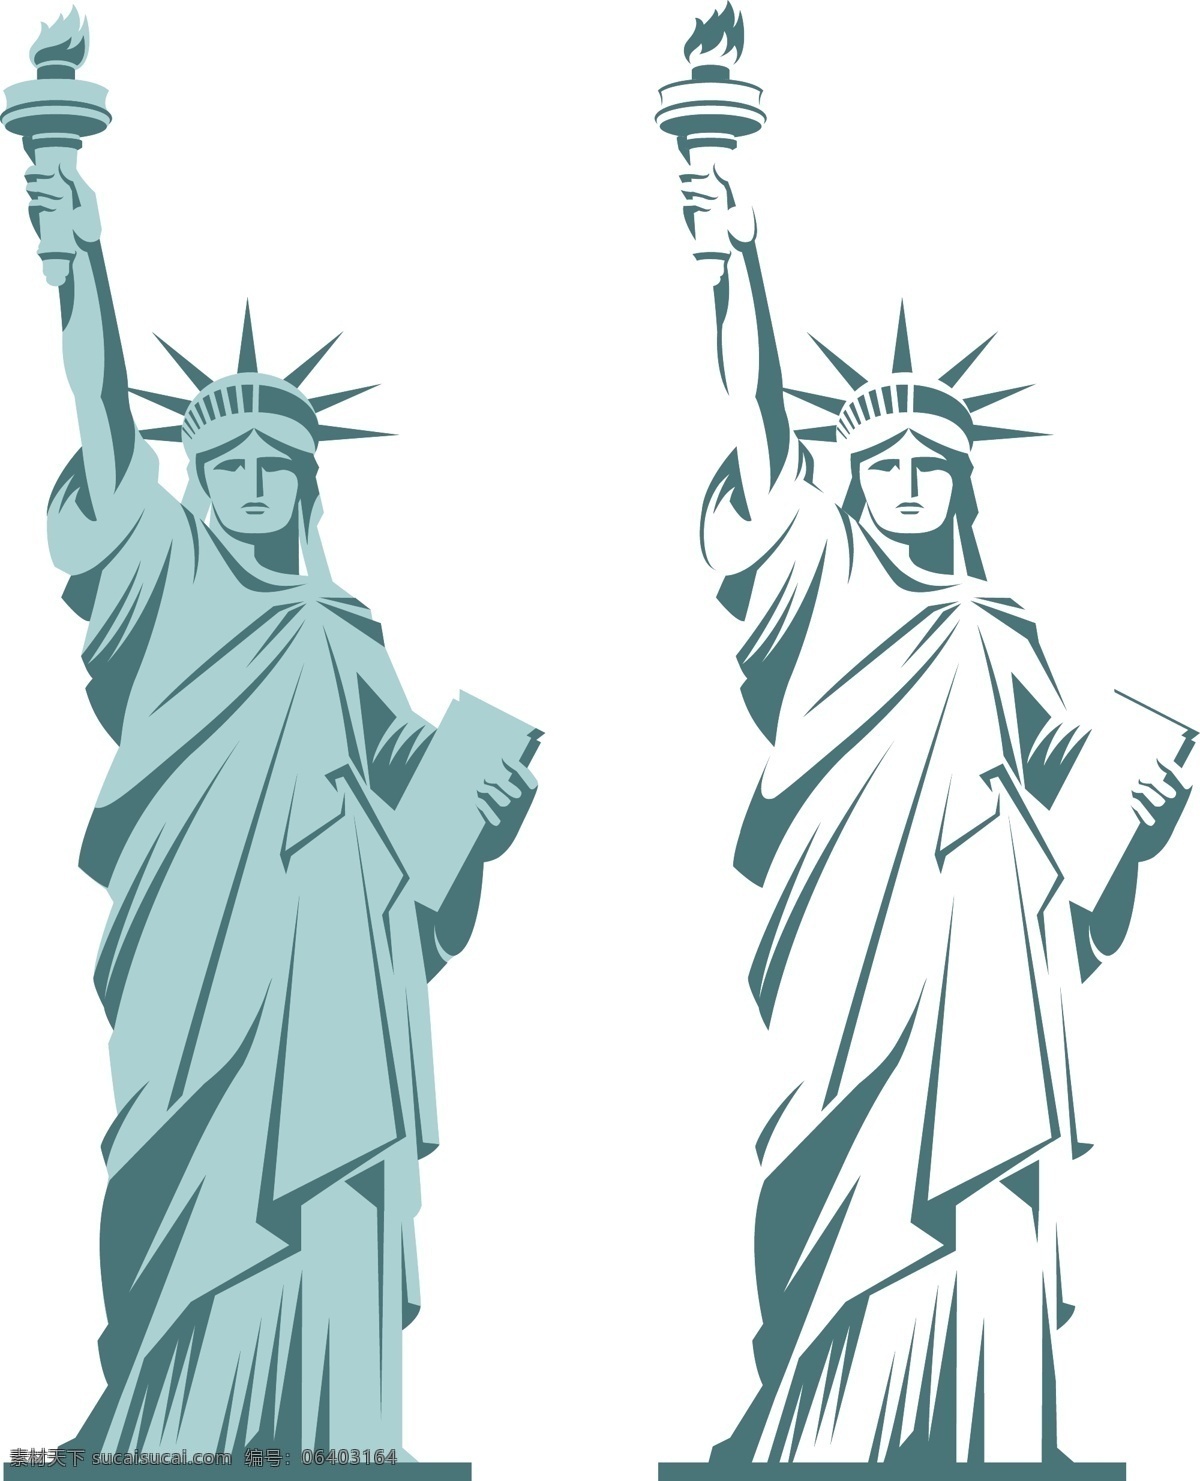 自由女神像 美国设计元素 美国 纽约自由女神 纪念碑 城市符号 国际著名景点 美国设计 美国元素 文化艺术 传统文化